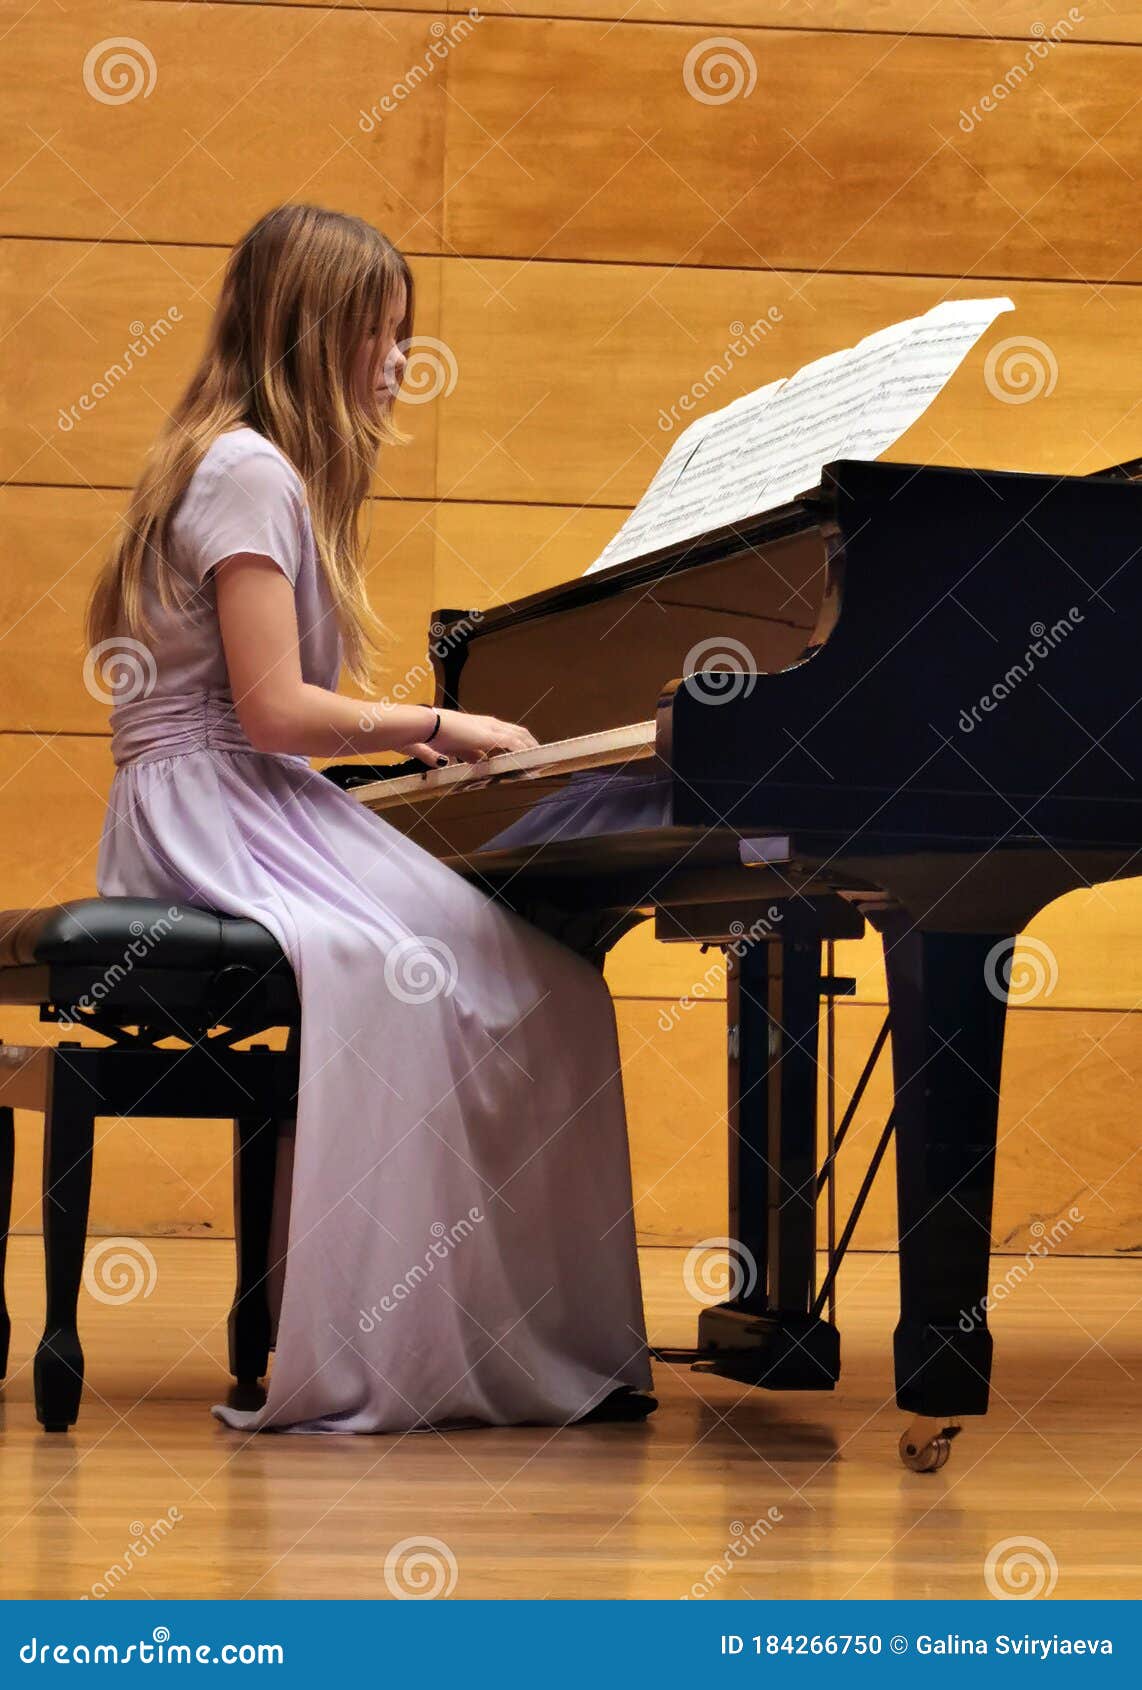 Música: Há jovens que têm no piano uma extensão do corpo